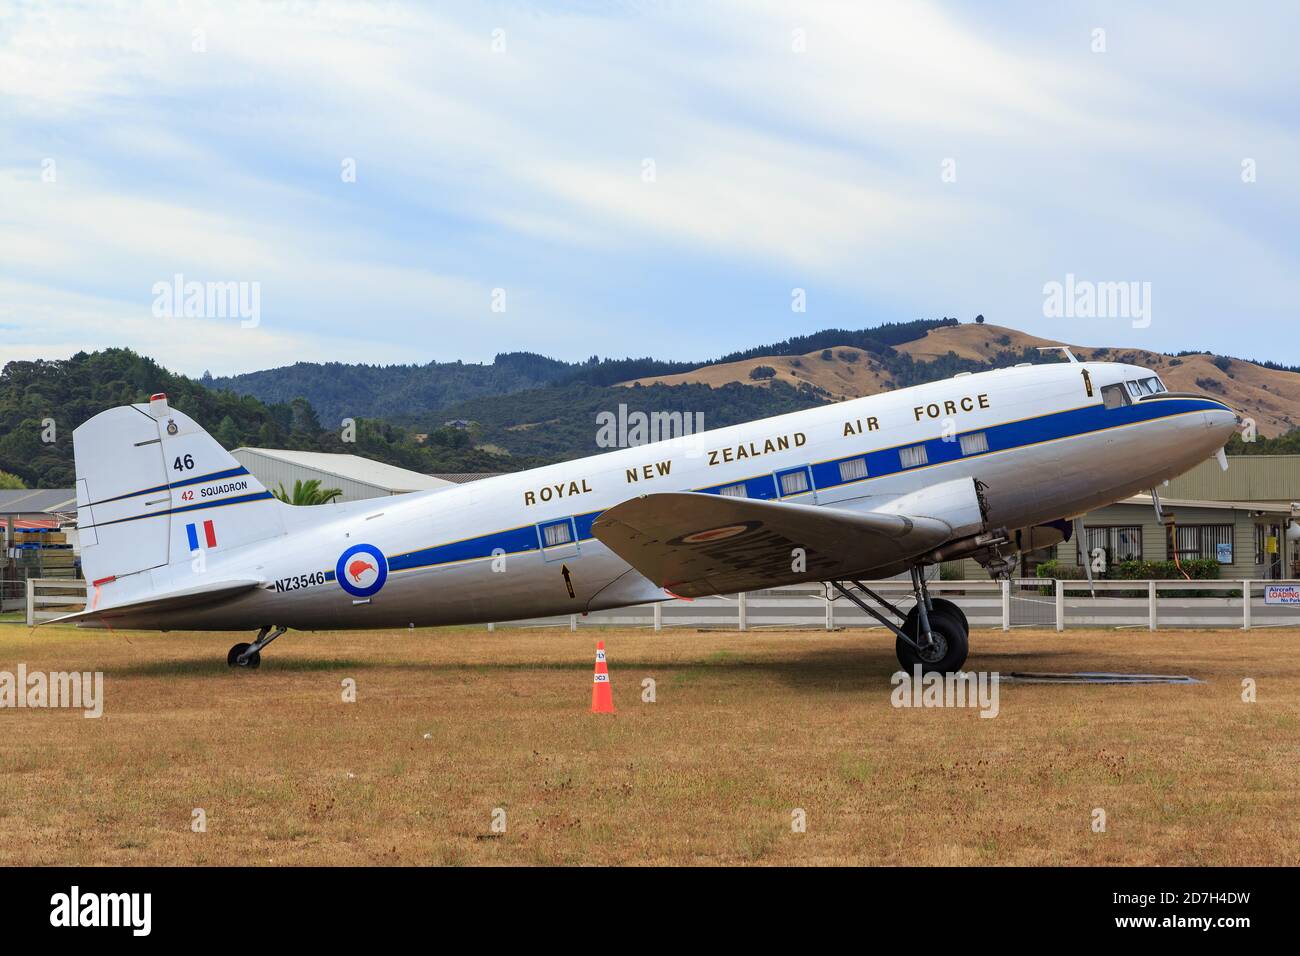 Un avion DC-3 de Douglas des années 1940 peint dans les couleurs de la Royal New Zealand Air Force. Whitianga, Nouvelle-Zélande, février 4 2020 Banque D'Images